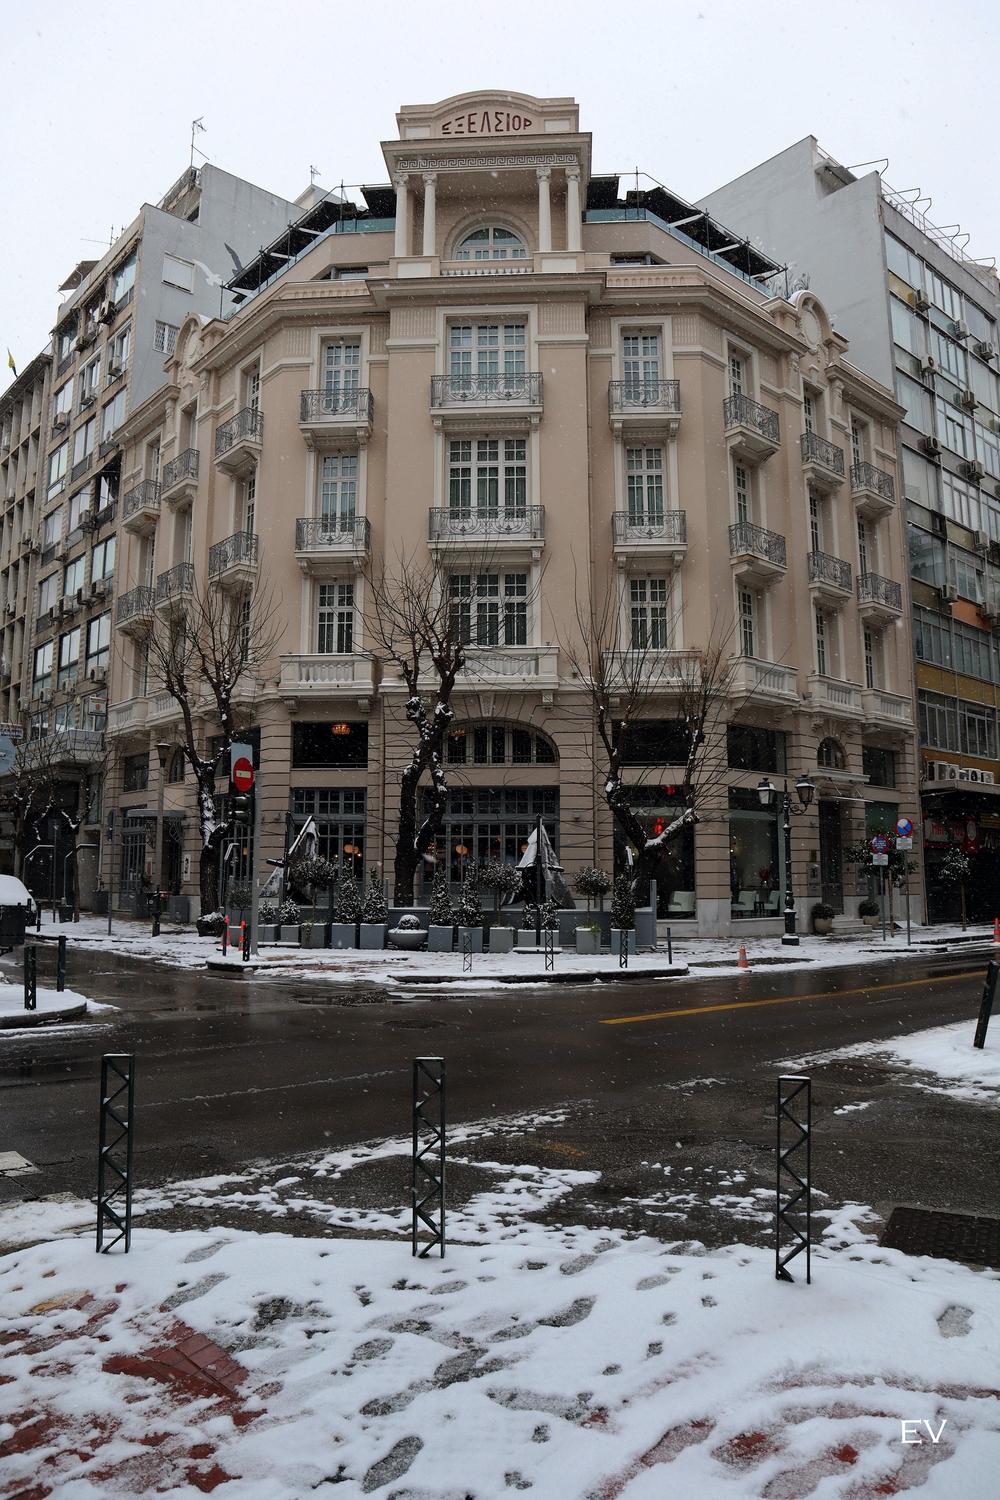 Περπατώντας στη χιονισμένη Θεσσαλονίκη, από την Ευφροσύνη Βασίλαρου